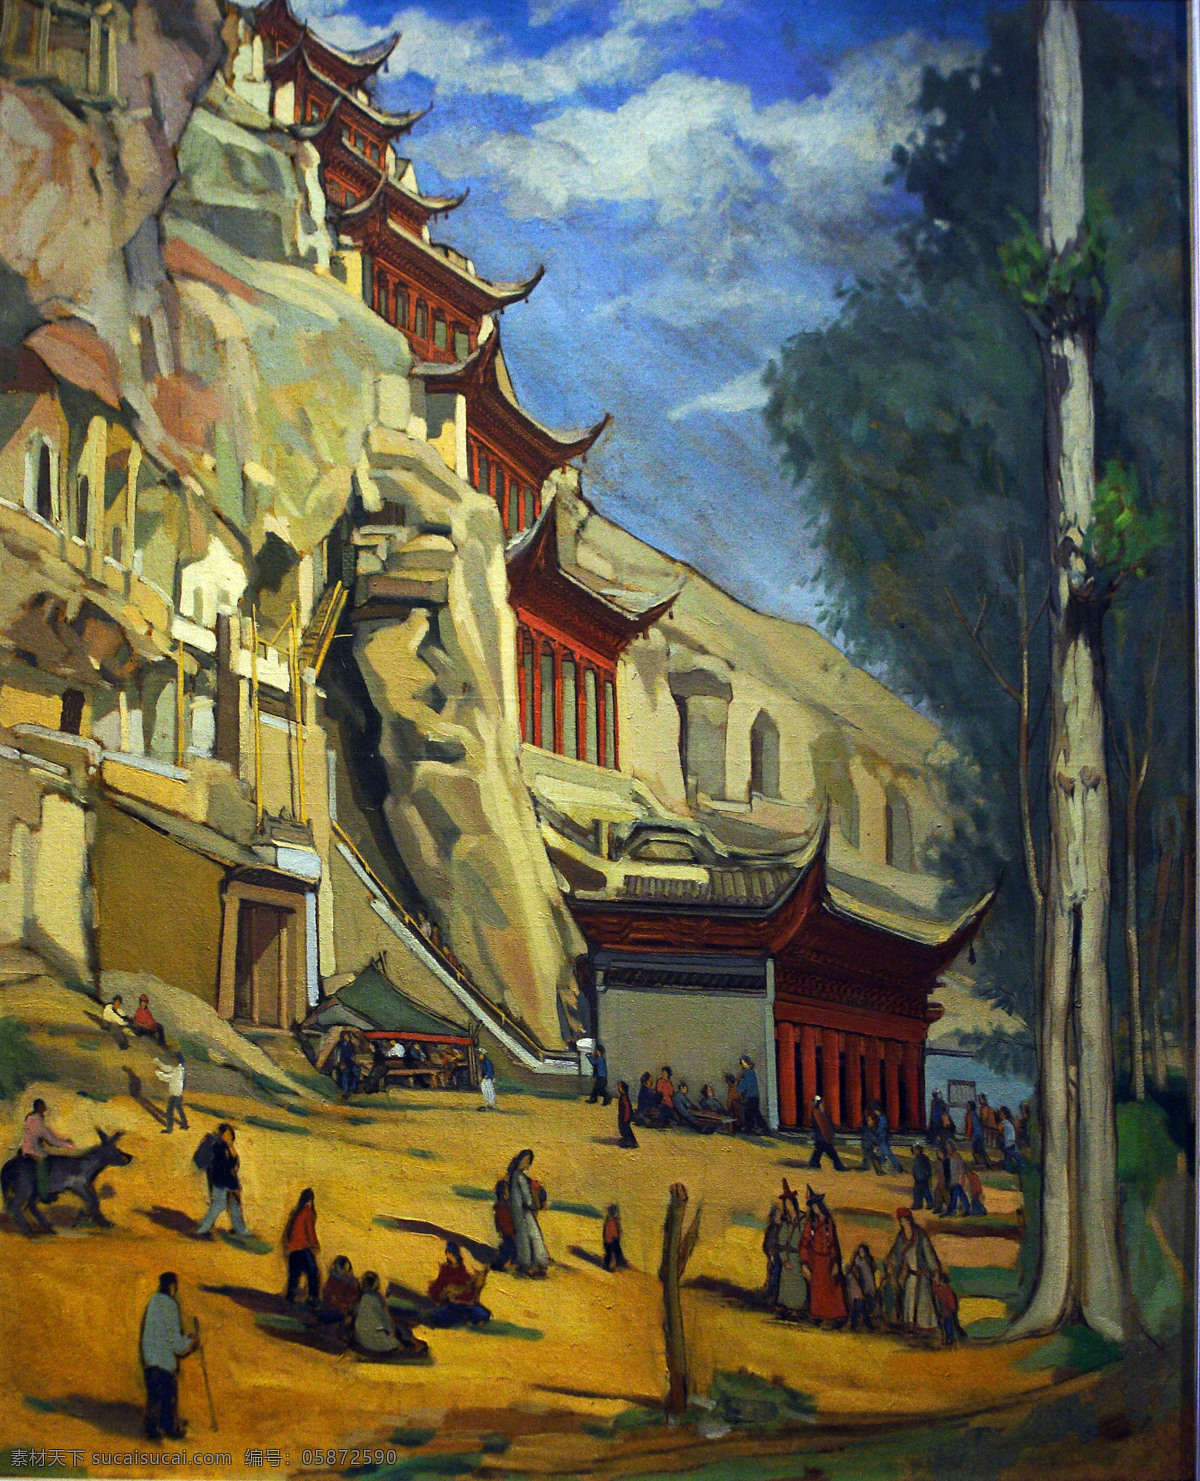 藏族 佛教 甘肃 绘画书法 寺庙 文化艺术 西藏 敦煌油画 非高清 油画 敦煌石窟 莫高窟 装饰素材